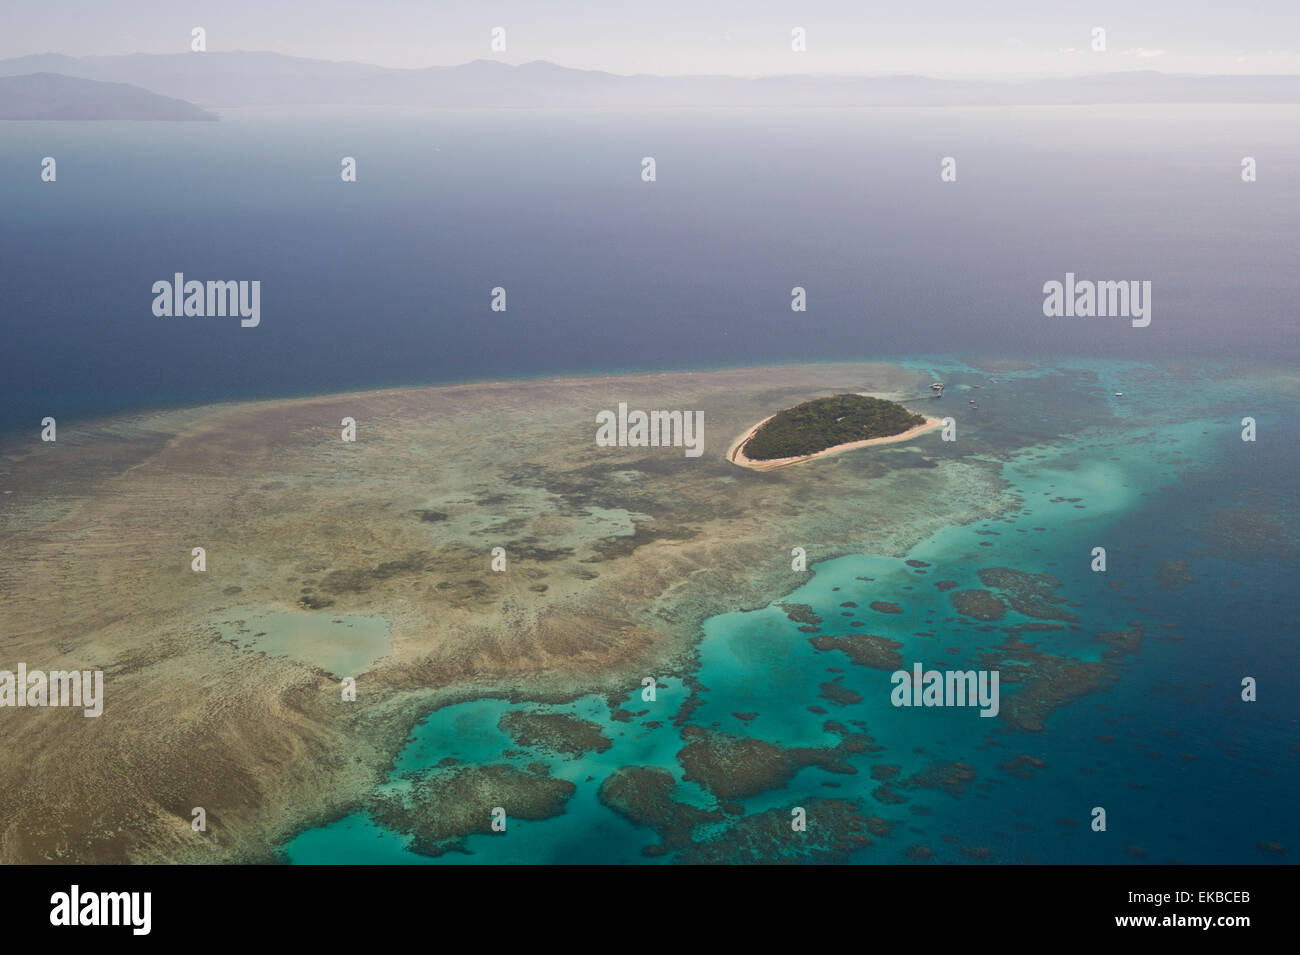 Photographie aérienne de formations de récifs coralliens de la Grande Barrière de corail, l'UNESCO, près de Cairns, Queensland du Nord, Australie, Pacifique Banque D'Images